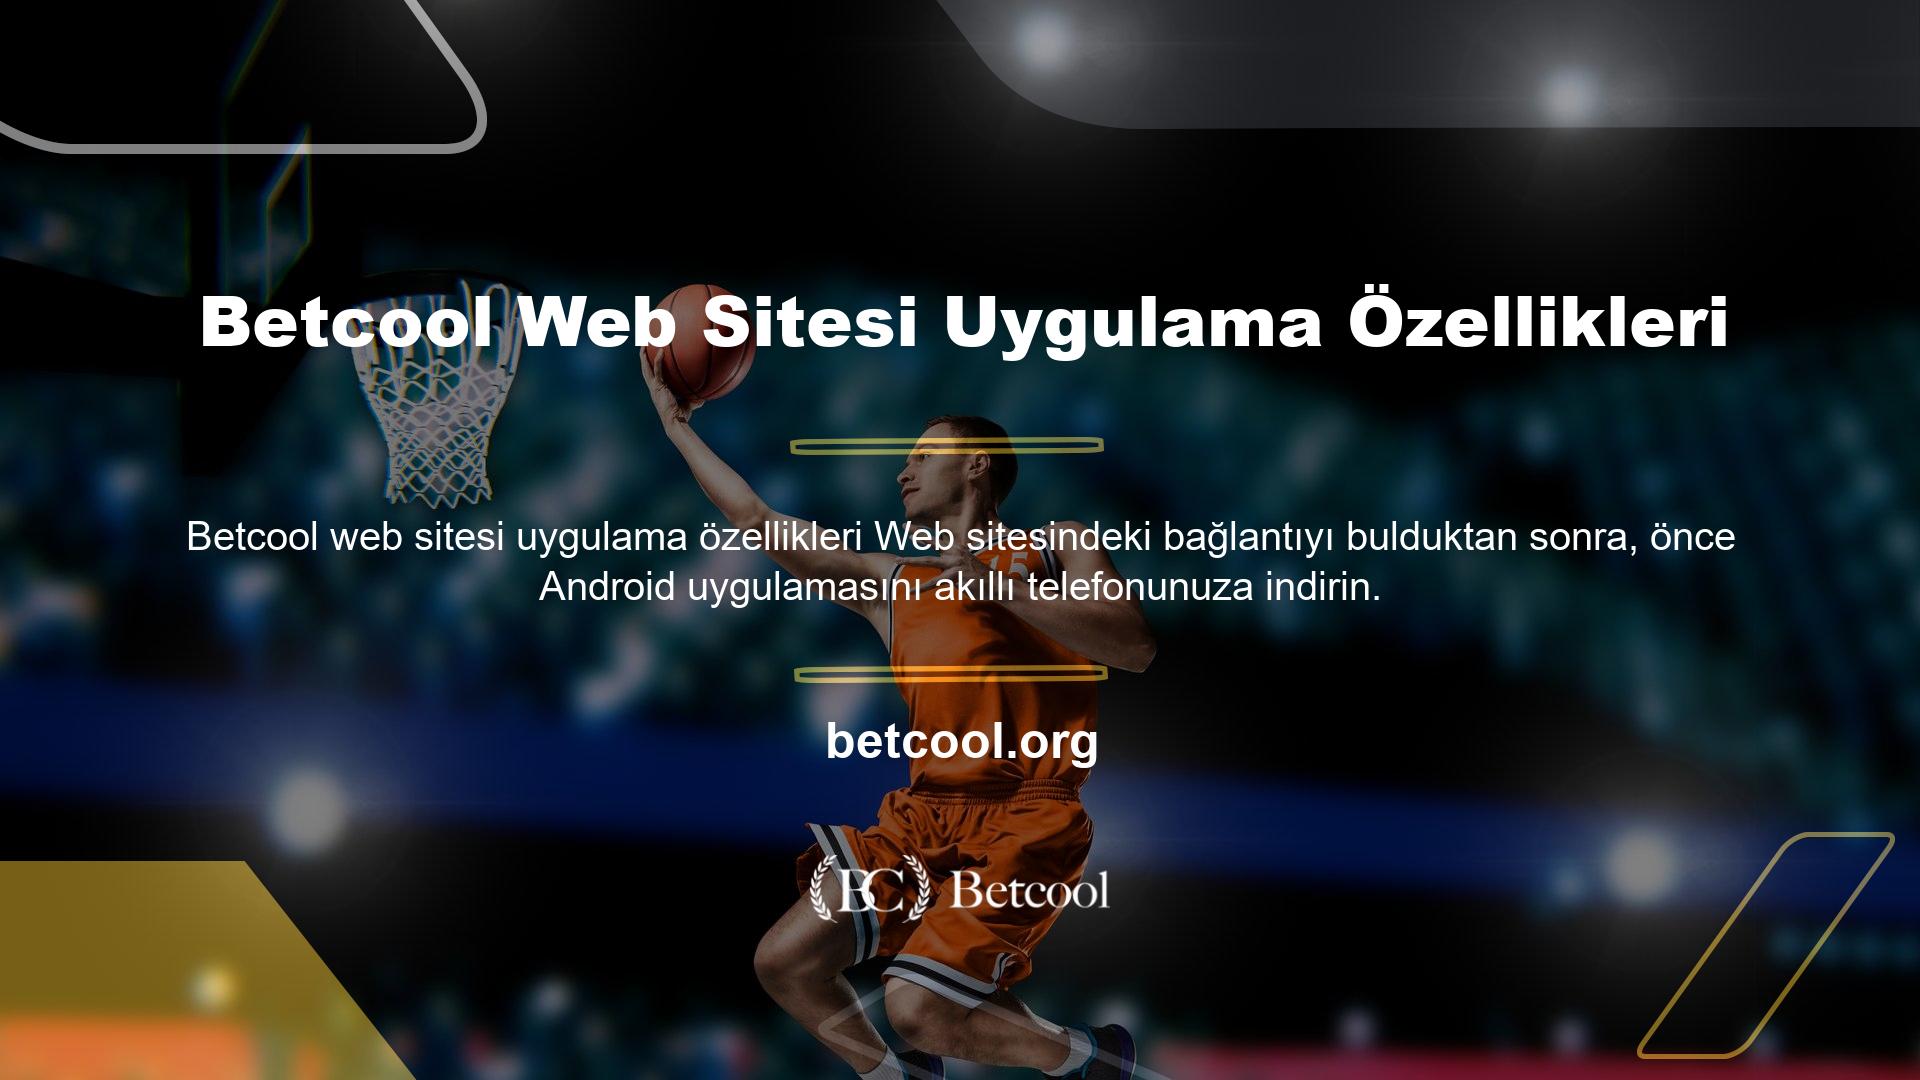 Betcool web sitesi uygulama özellikleri